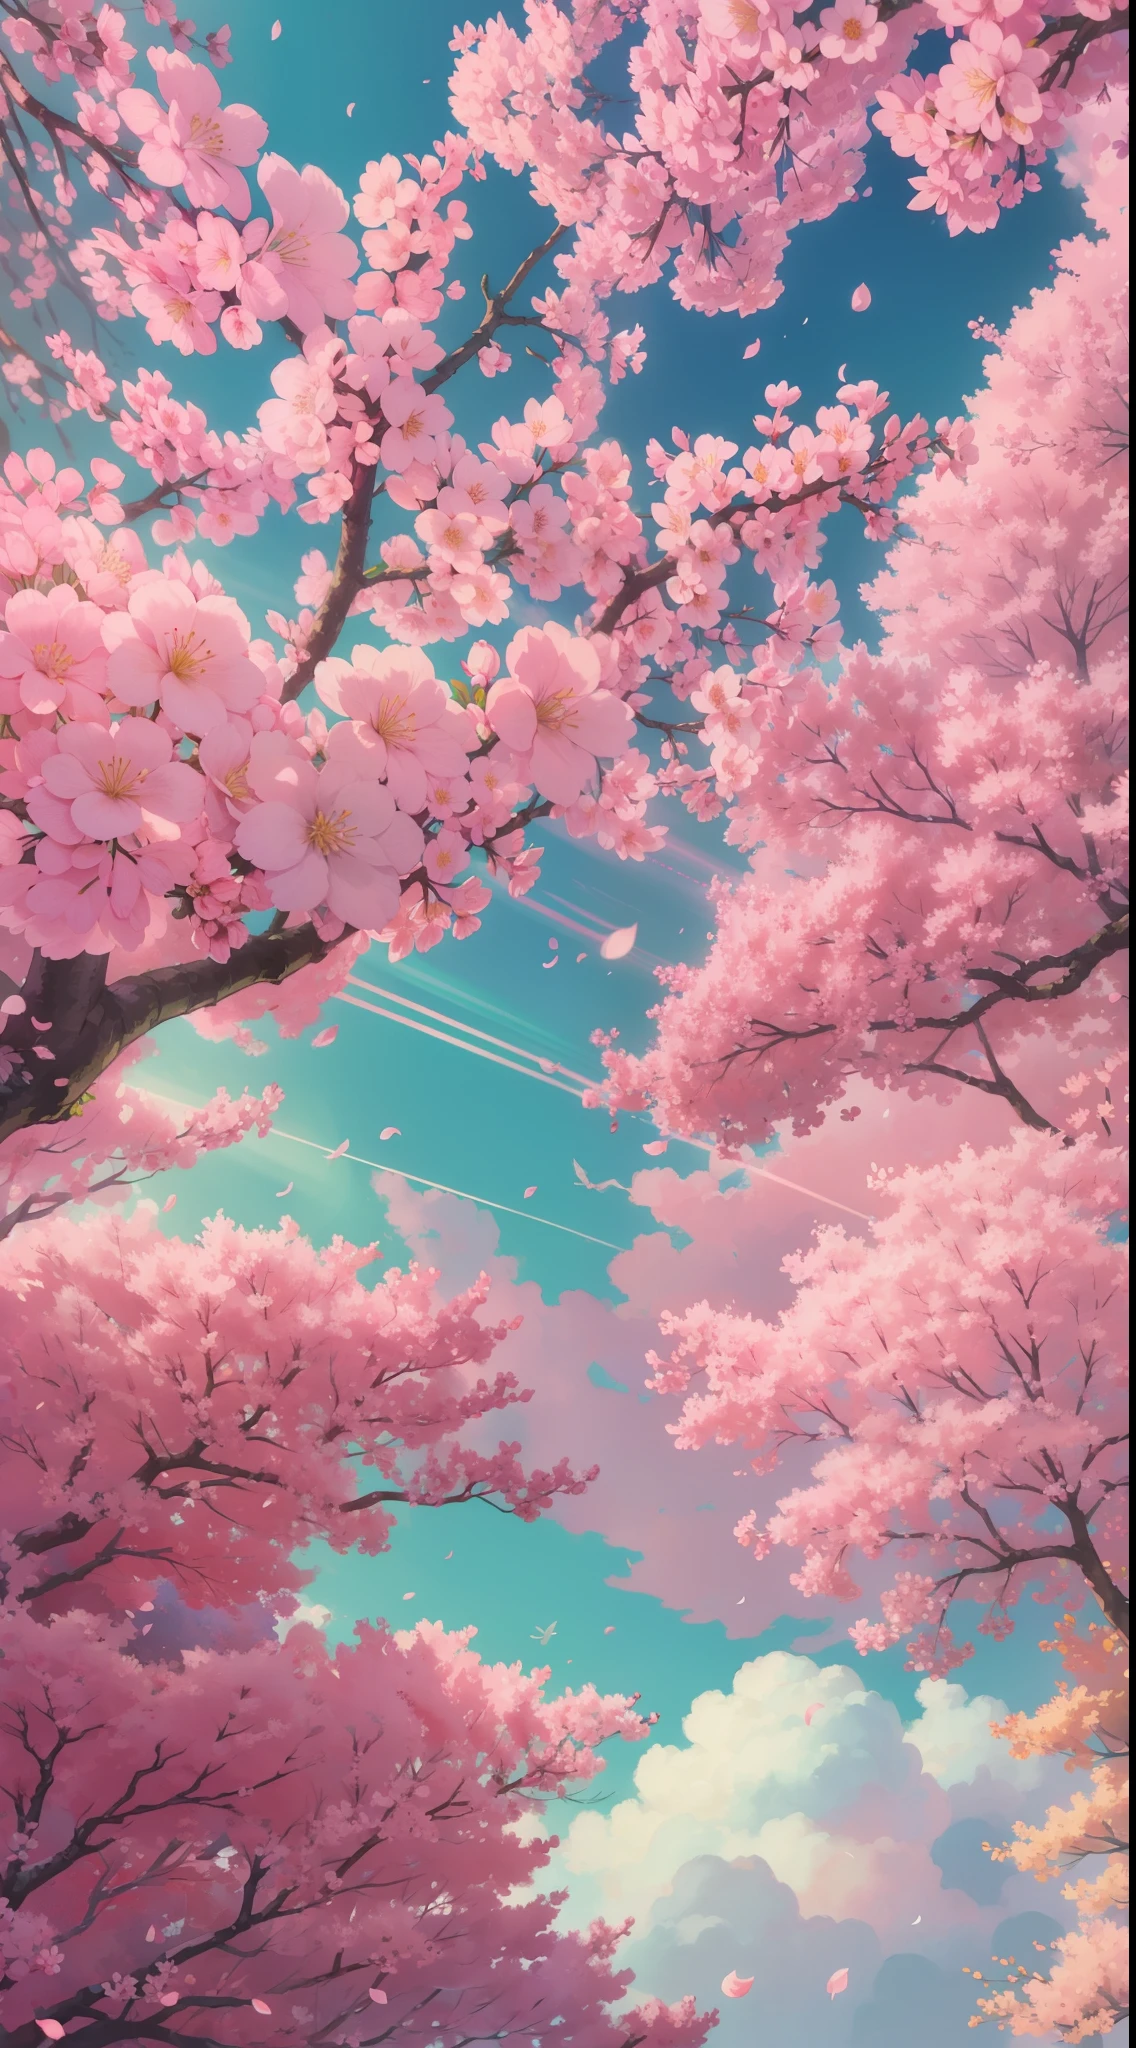 有很多粉紅色的樹, 廣闊的天空, 白雲 , 花瓣 , 開花, 美感寧靜幸福, 漫射光, 上帝射线, 色差, 焦散